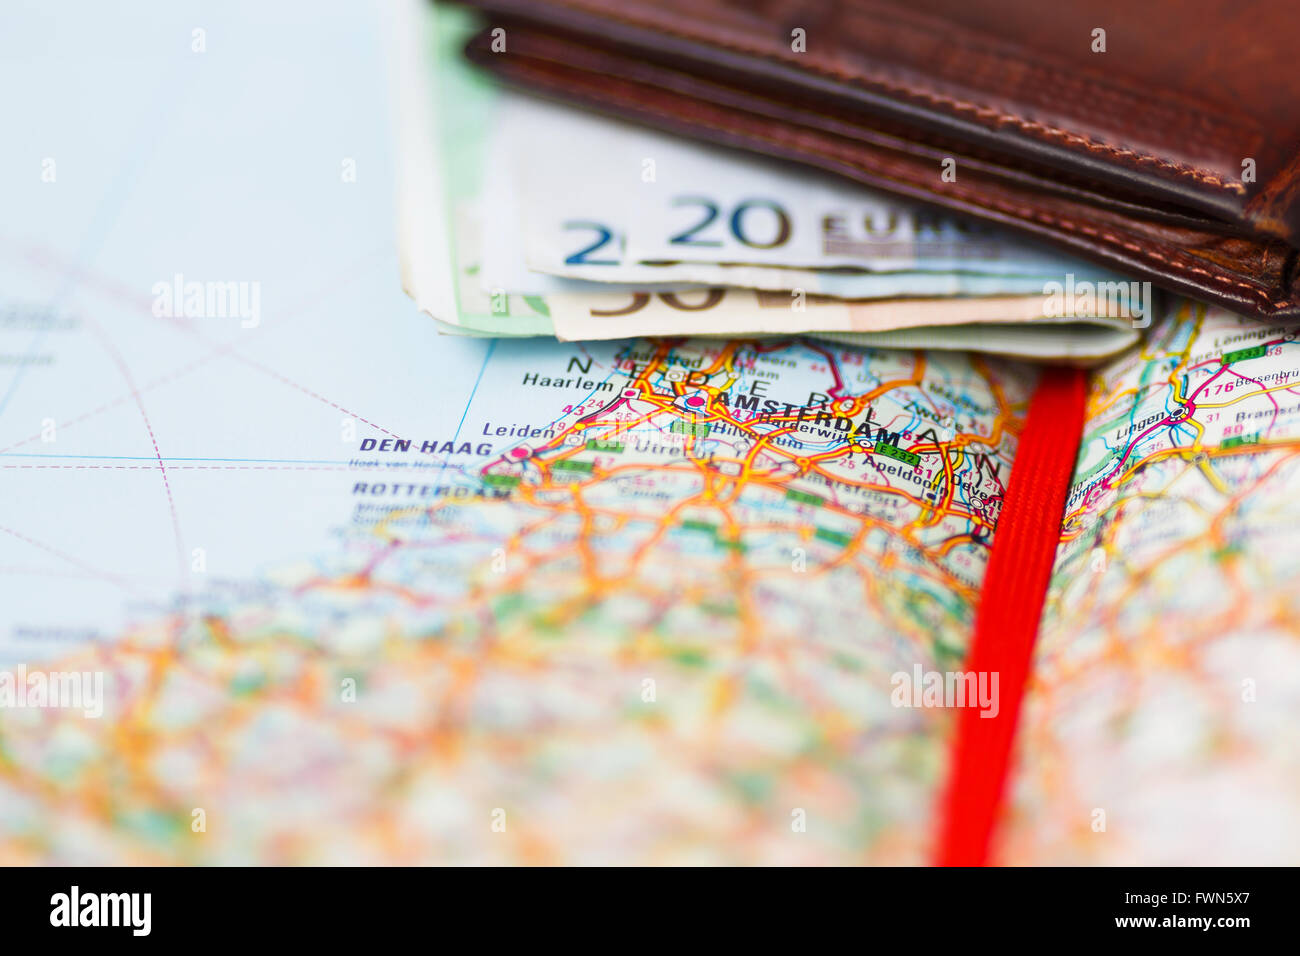 Euro-Banknoten im Portemonnaie auf einer geografischen Karte von Amsterdam, Niederlande Stockfoto